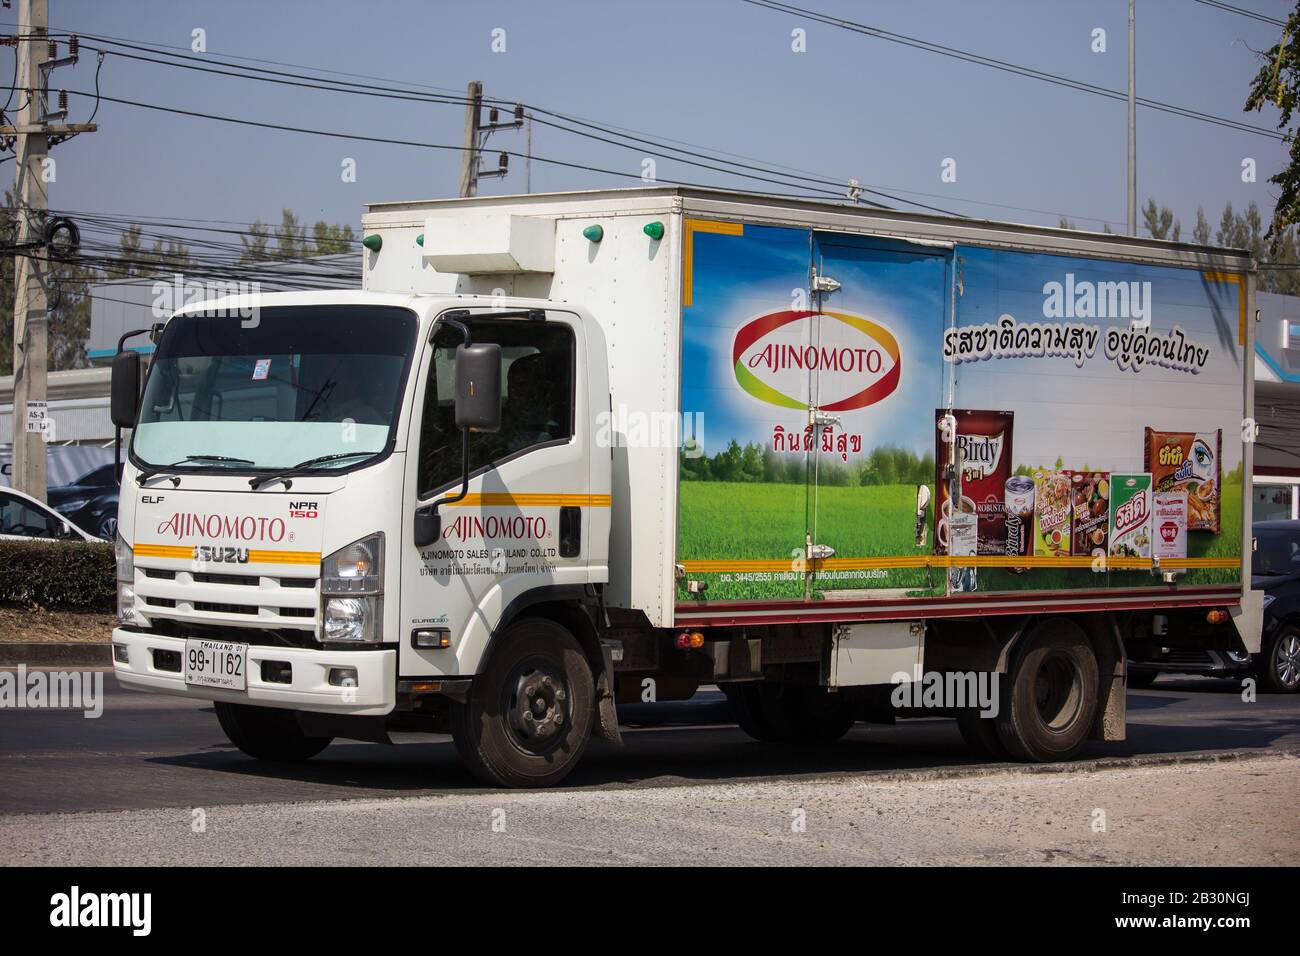 Chiangmai, Thaïlande - 7 février 2020: Camion à conteneurs de la société de vente d'Ajinomoto thaïlande. Photo à la route no 121 à environ 8 km du centre-ville de Chiangmai, TH Banque D'Images